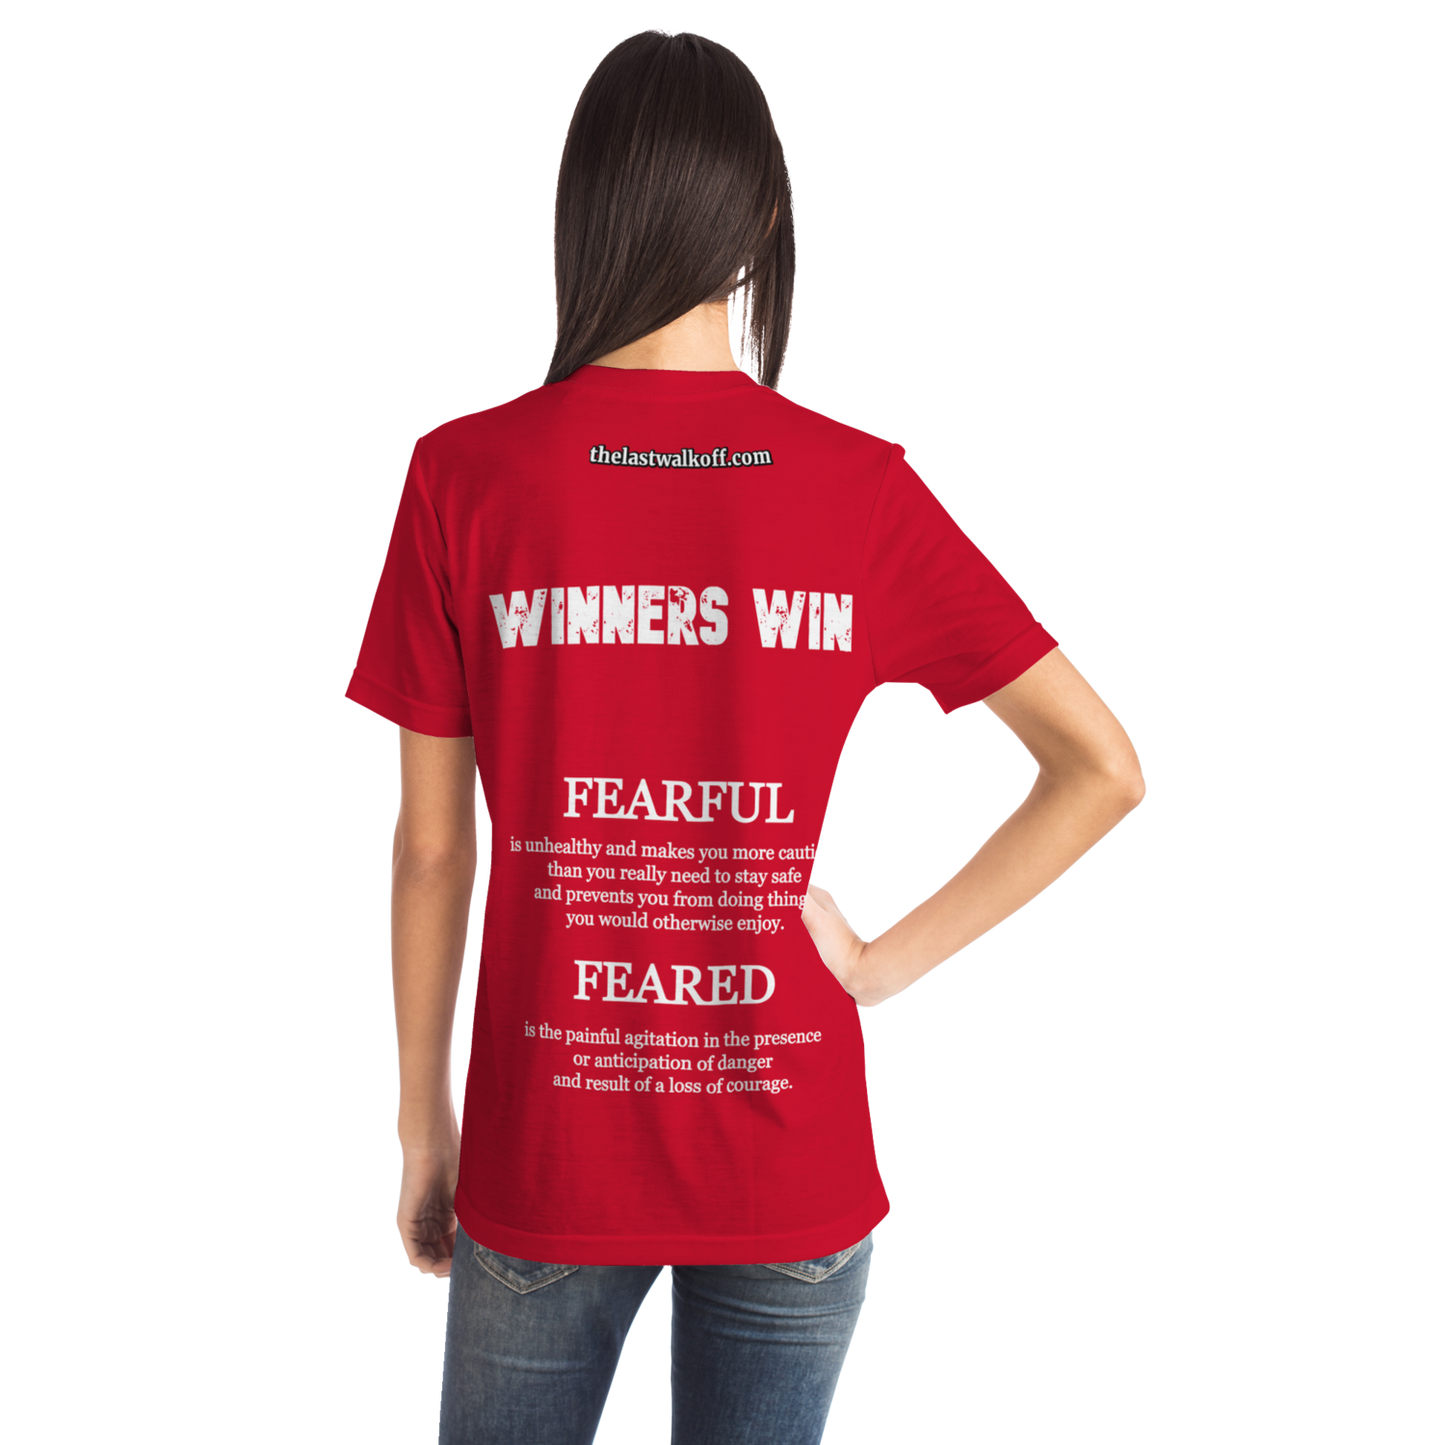 Feared not Fearful Winners Win T-Shirt Red